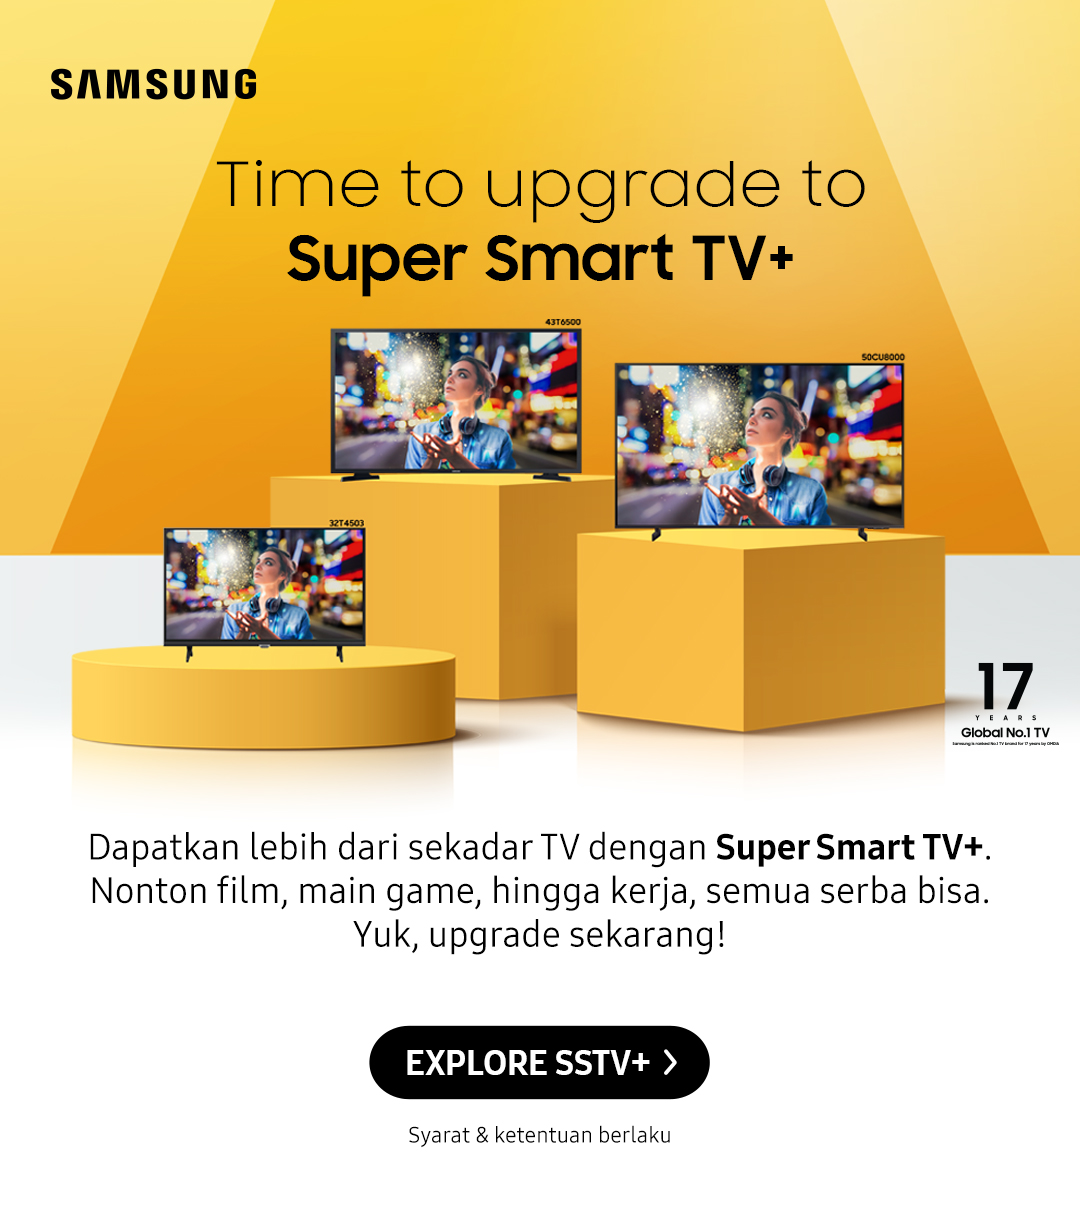 Time to upgrade to Super Smart TV+ | Dapatkan lebih dari sekadar TV dengan Super Smart TV+. Nonton film, main game, hingga kerja, semua serba bisa. Yuk, upgrade sekarang!